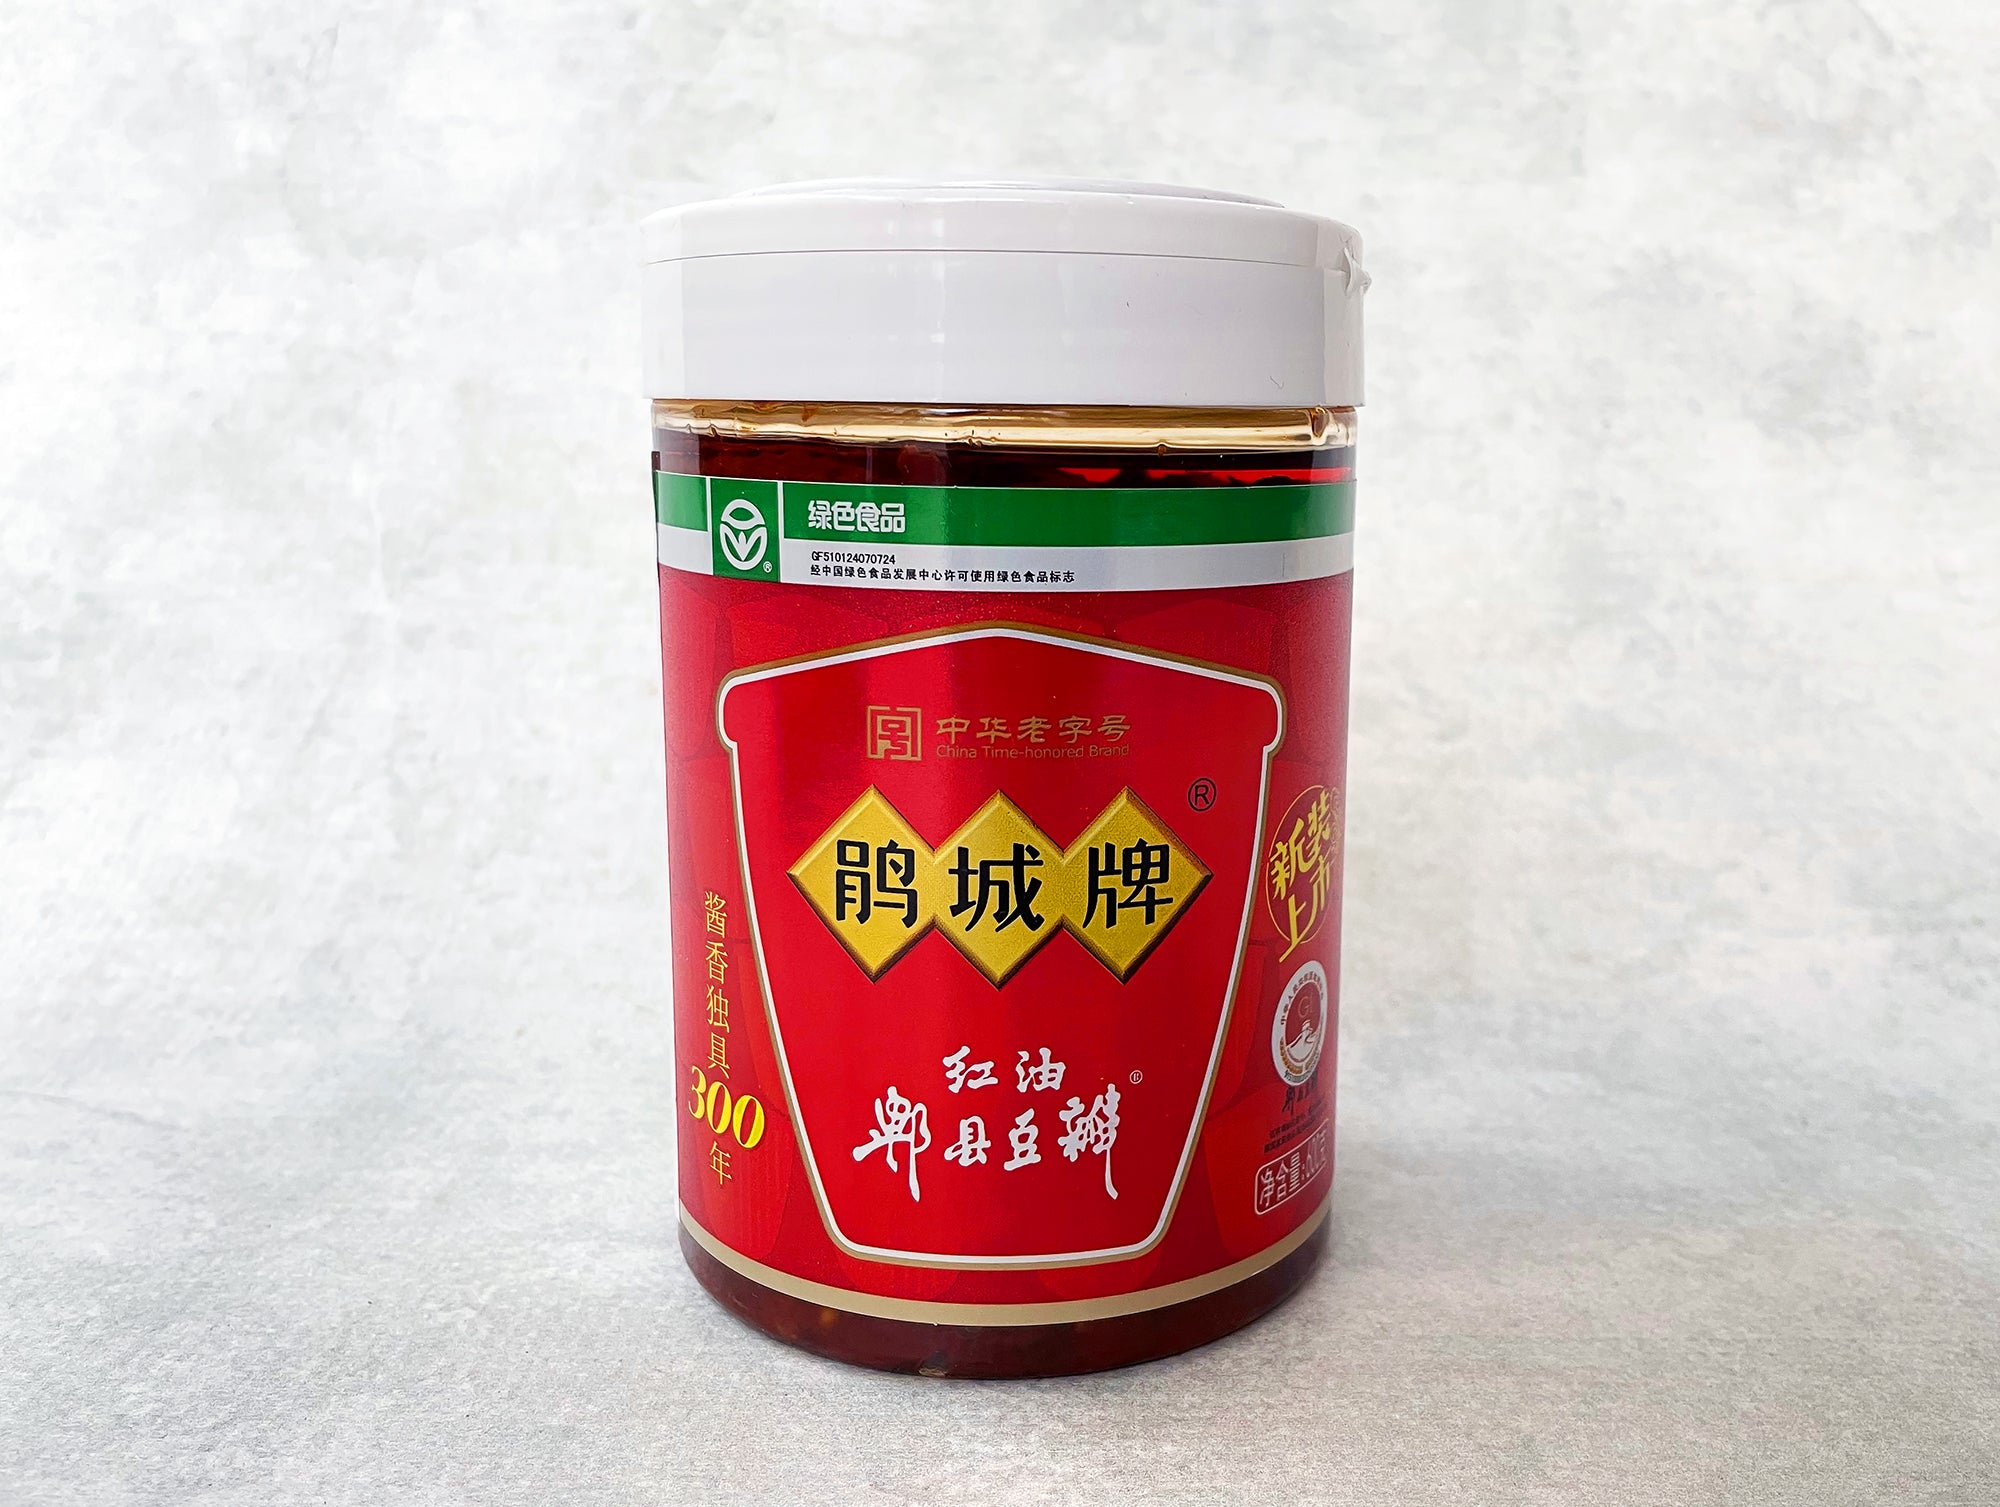 Broad The - (Juan Paste Market Pixian Red-Oil Mala Bean Doubanjiang) Cheng